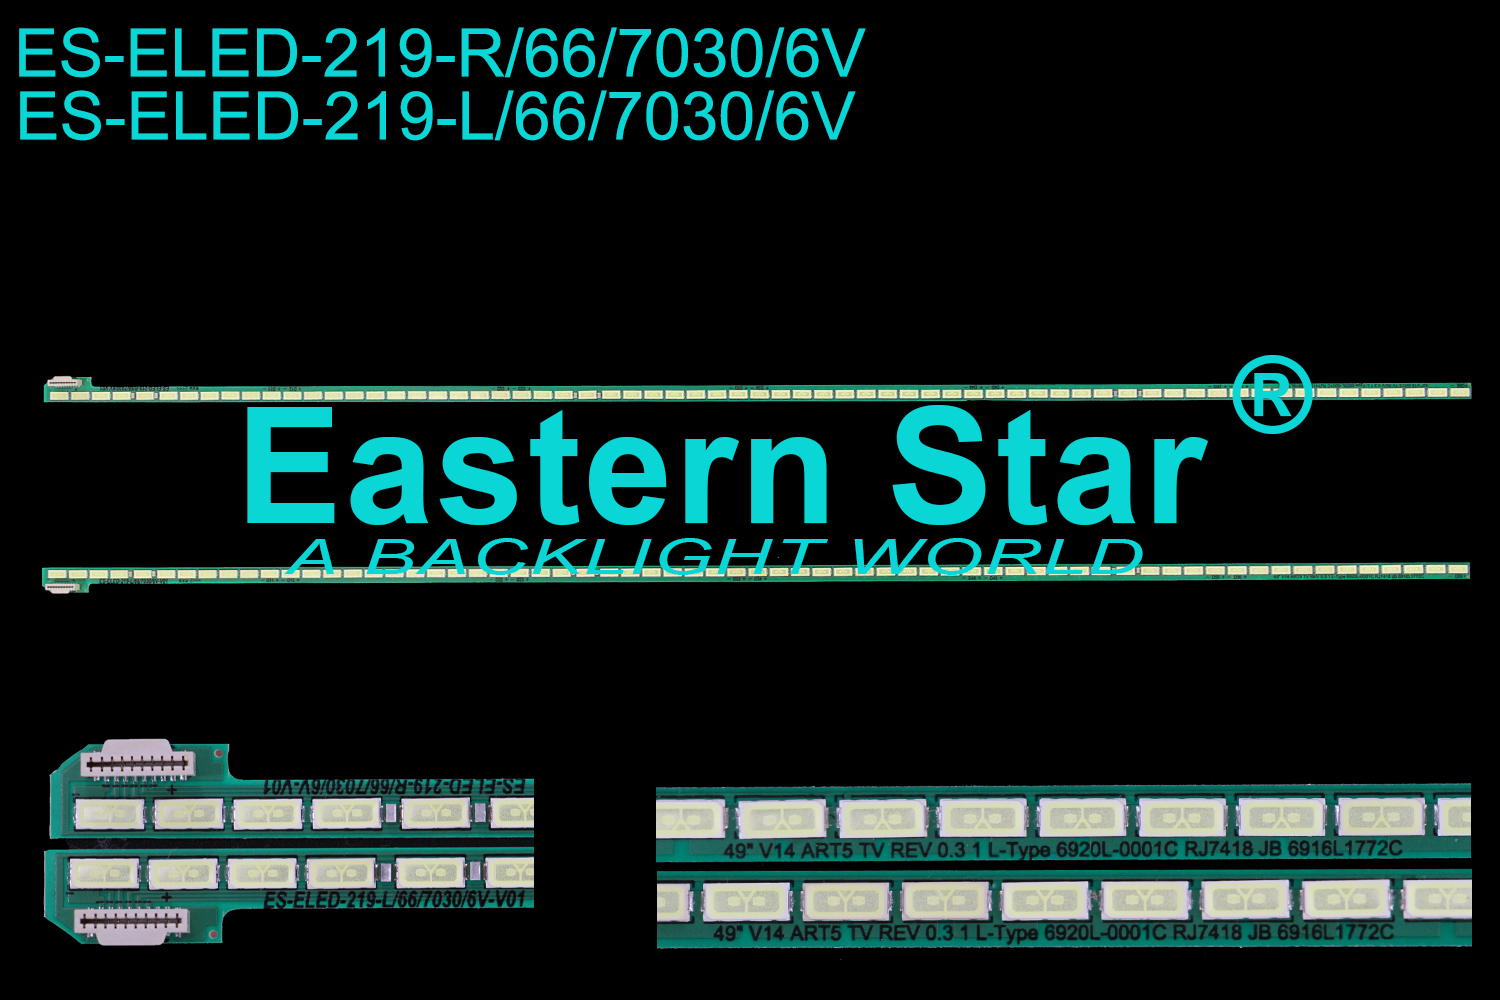 ES-ELED-219 ELED/EDGE TV backlight use for 49'' Lg  49UB8200/49UB830V/49UB850V/49UF695V 49'' V14 ART5 TV REV 0.3 1 L/R-TYPE 6920-0001C 6916L1772C LED STRIPS(2)